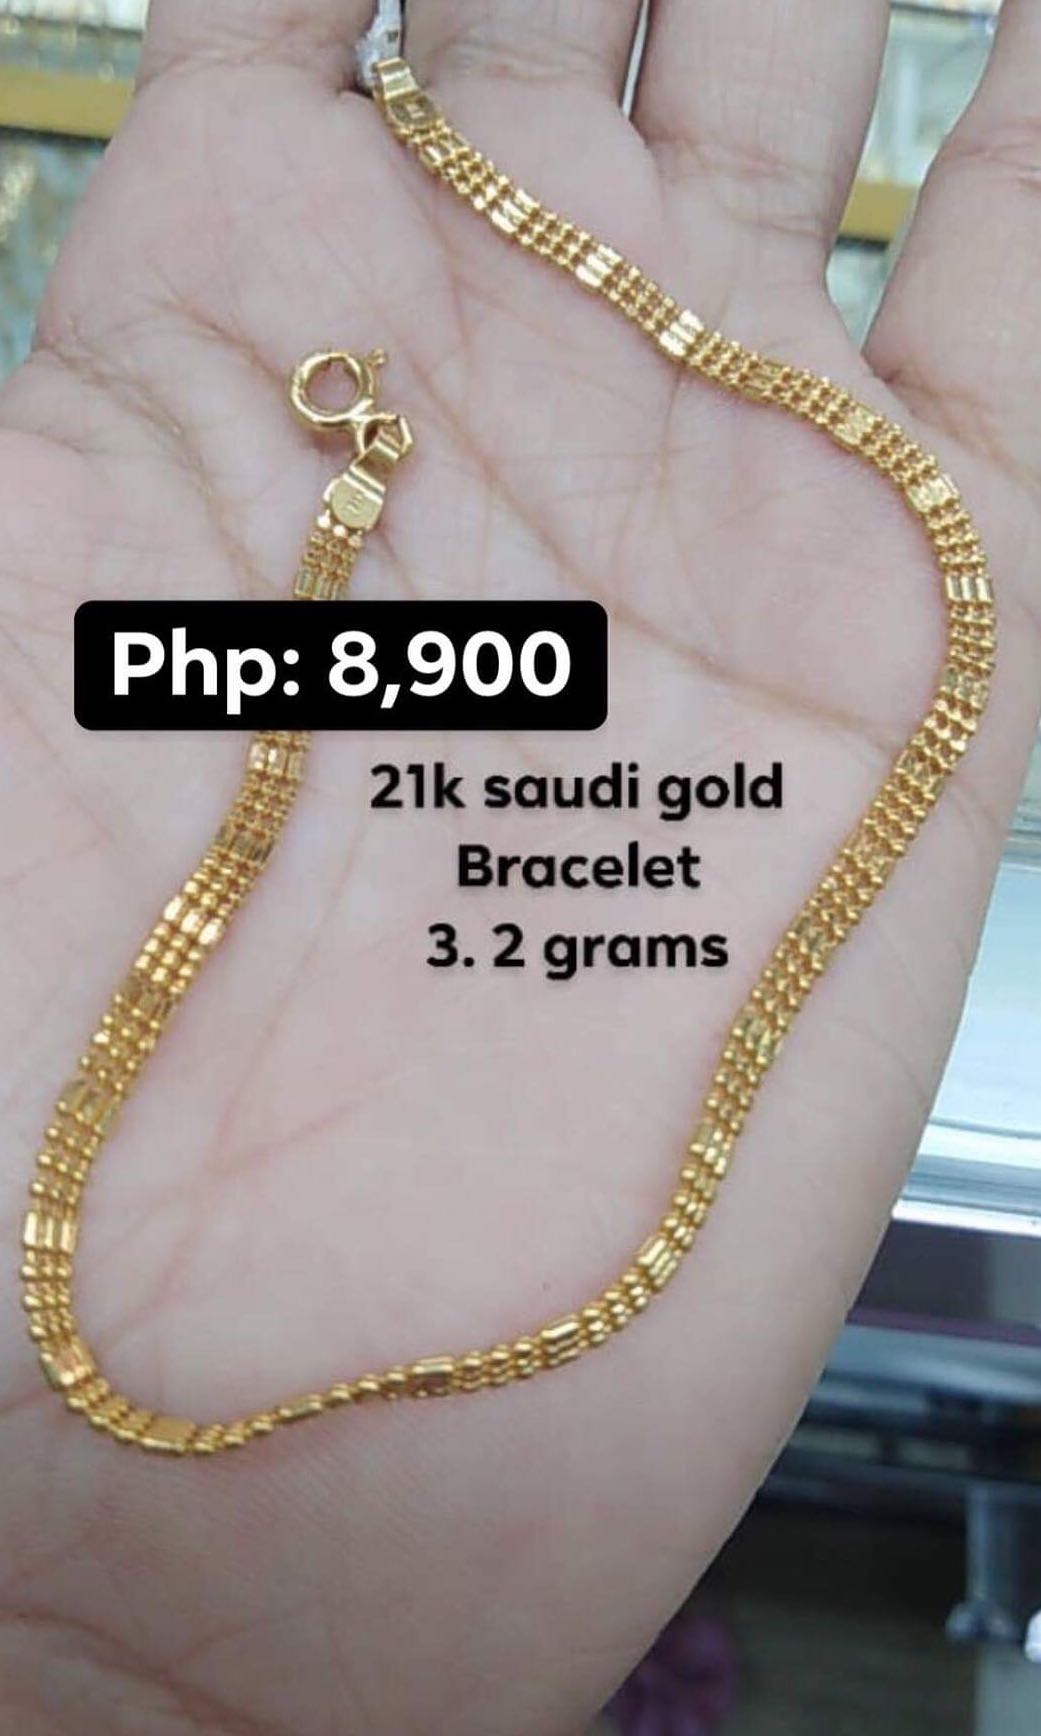 21K Saudi Gold Bracelet, Women's Fashion, Jewelry & Organizers ...